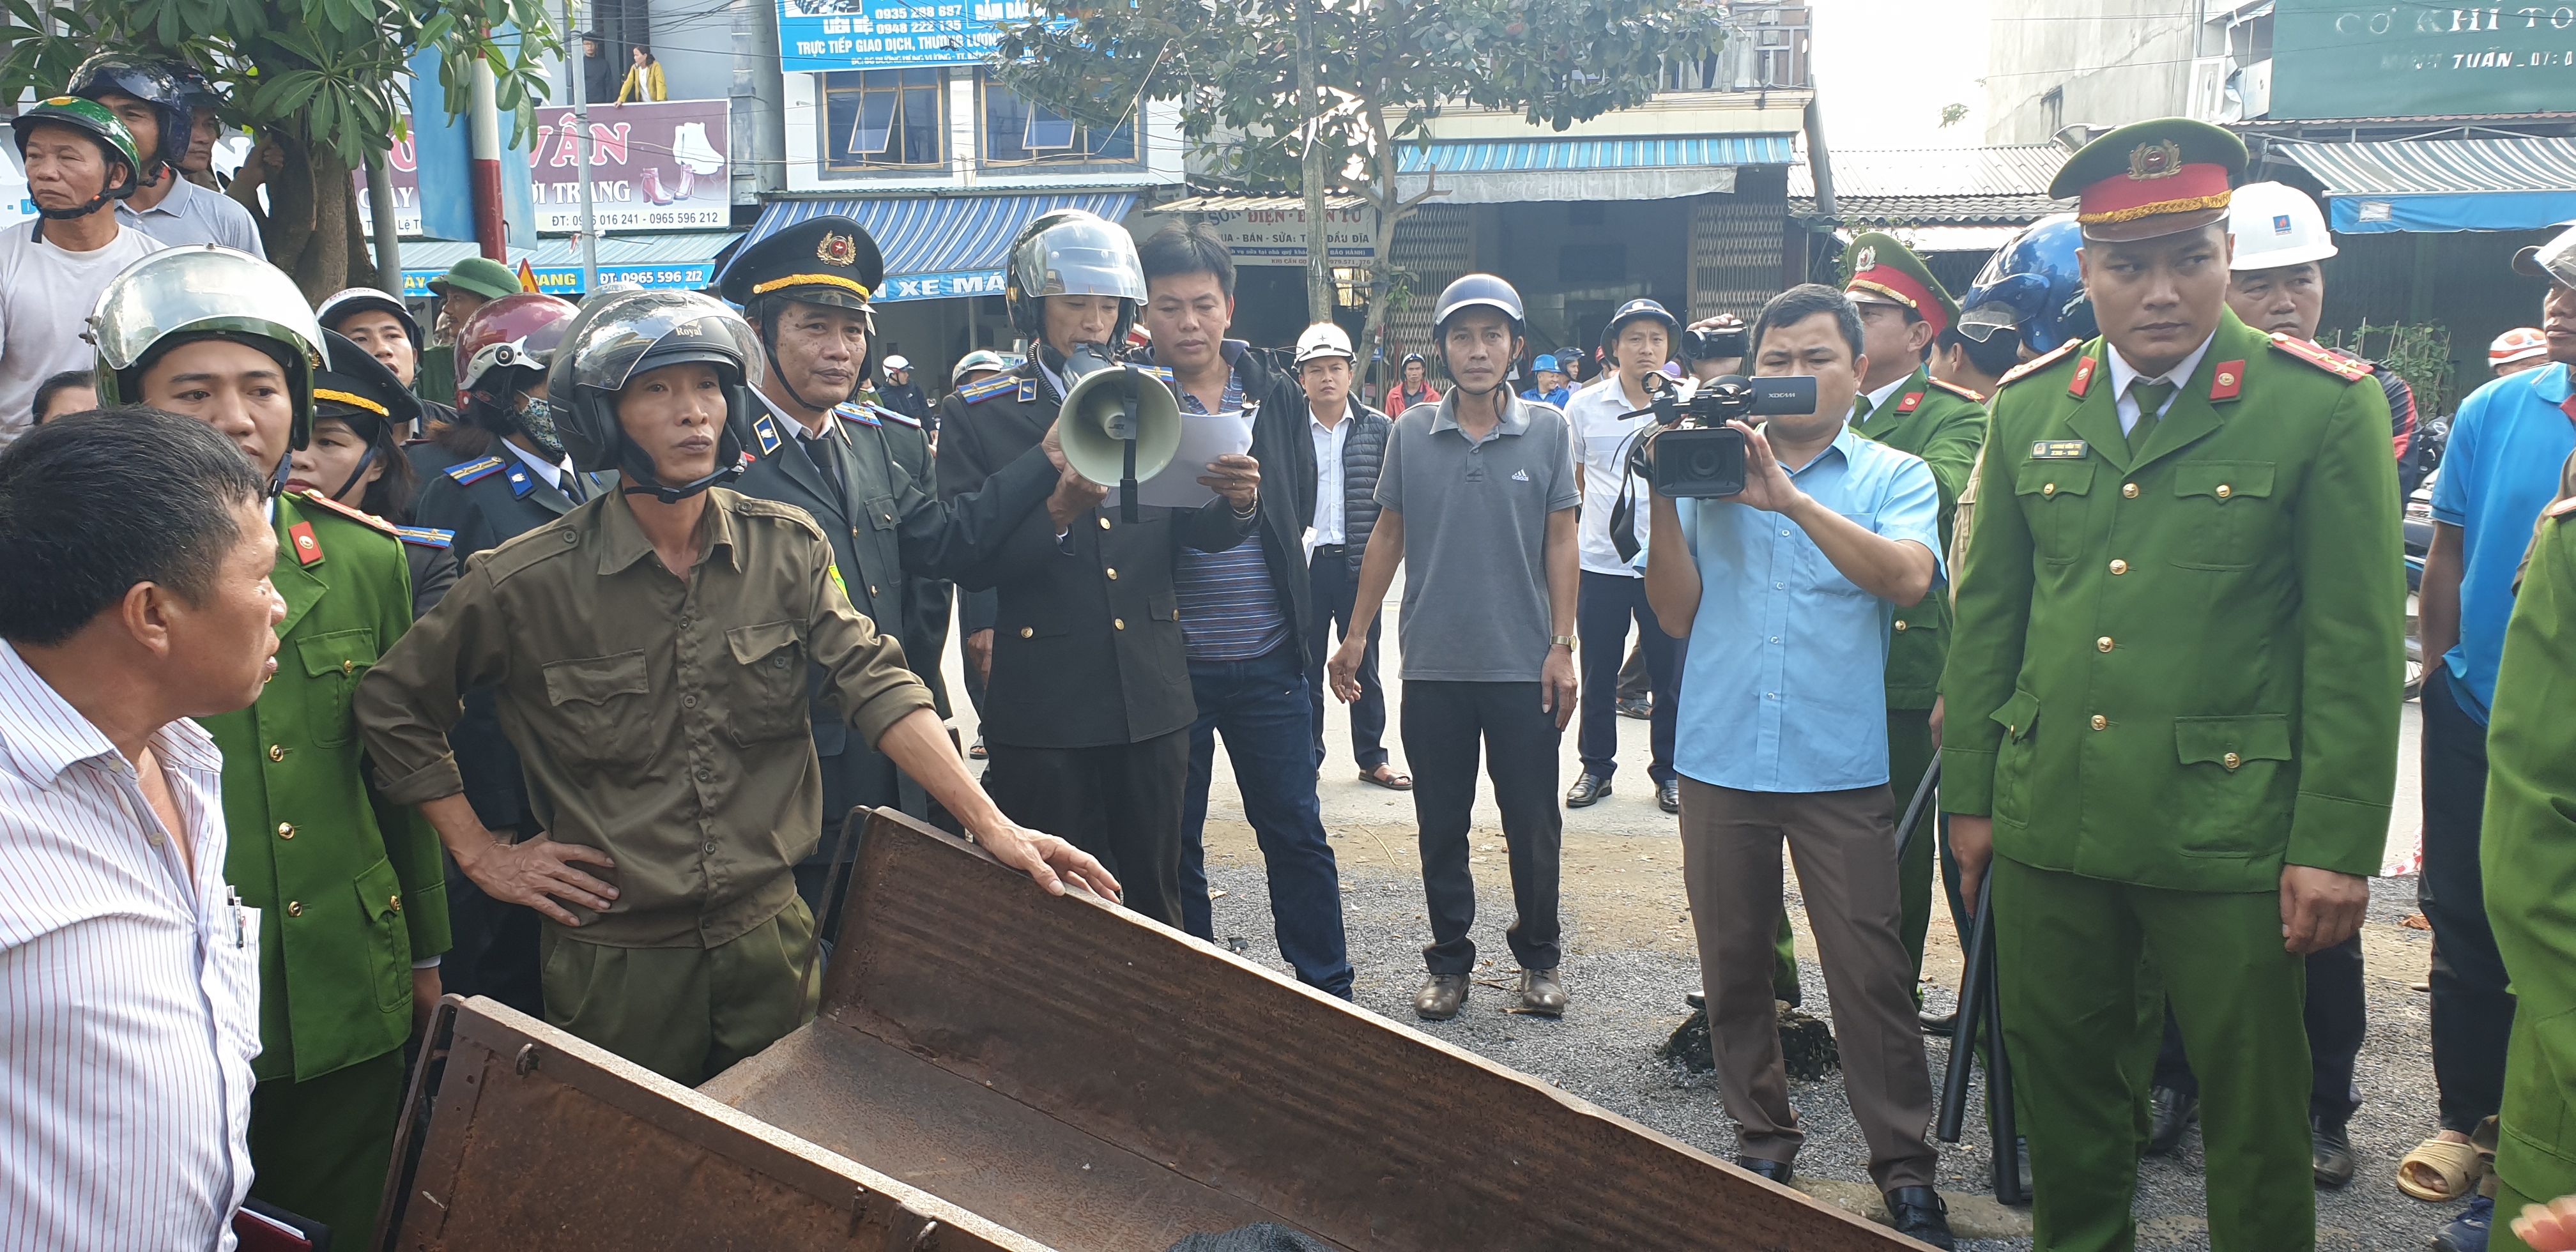 Chi cục Thi hành án dân sự huyện Lệ Thủy, tỉnh Quảng Bình tổ chức cưỡng chế thành công vụ việc thi hành án dân sự phức tạp, kéo dài trên địa bàn.